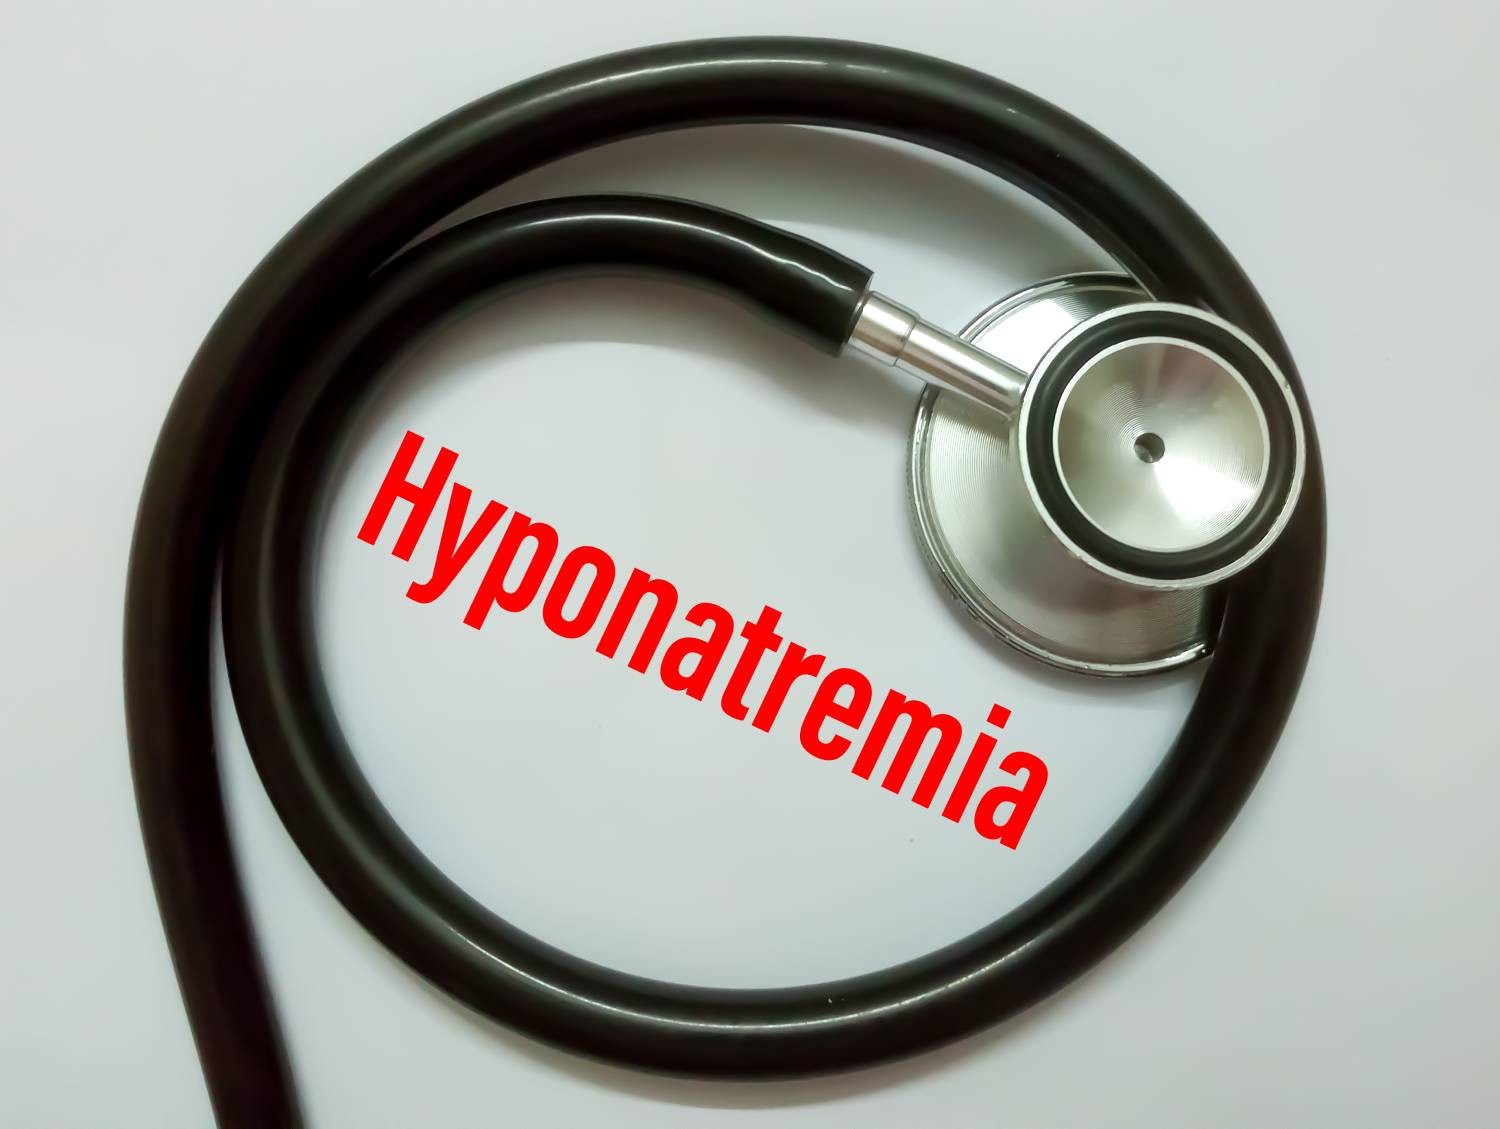 Hyponatraemia